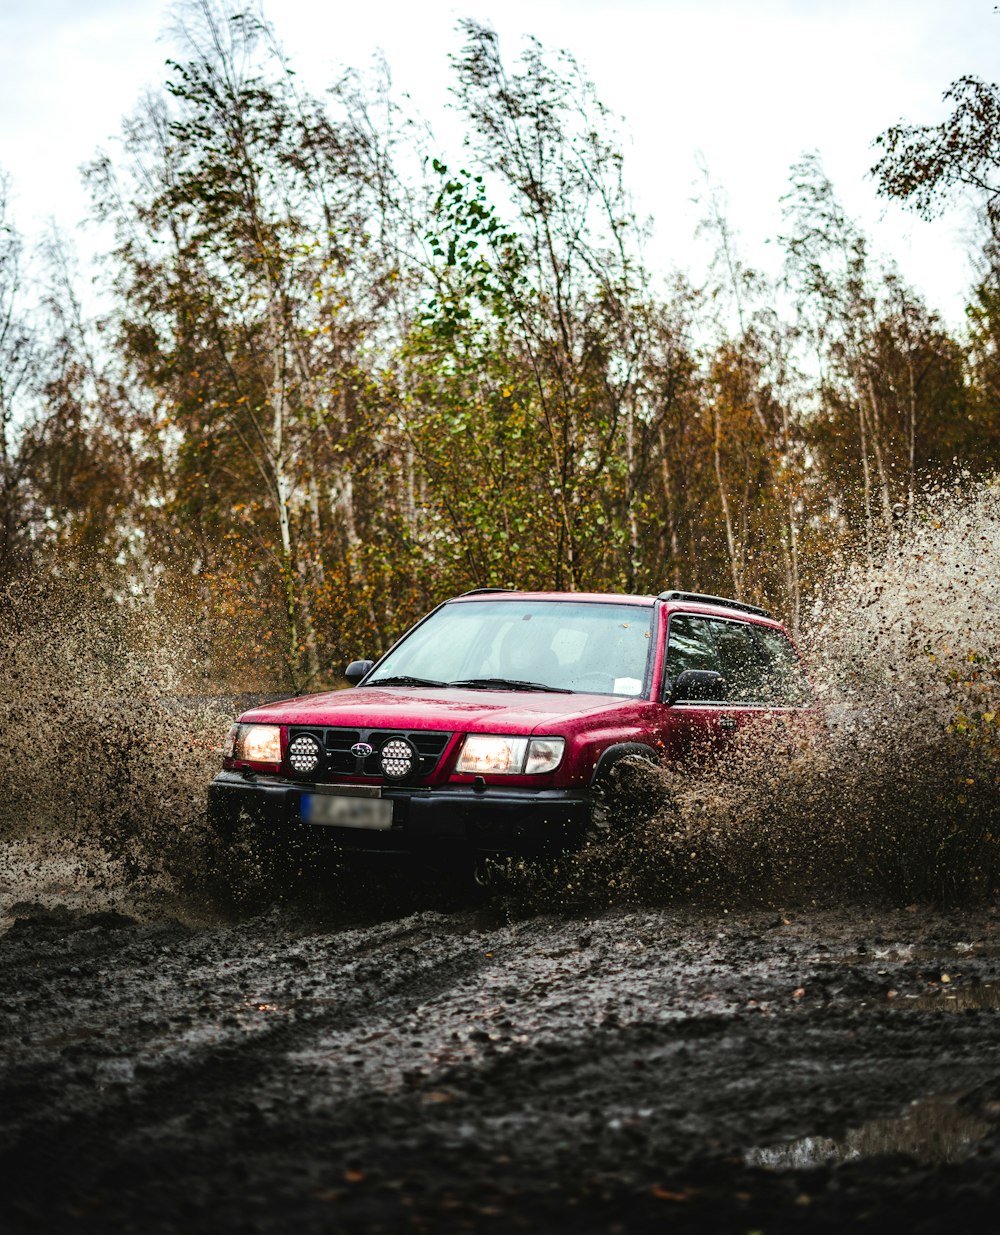 Une voiture rouge roulant dans une flaque de boue